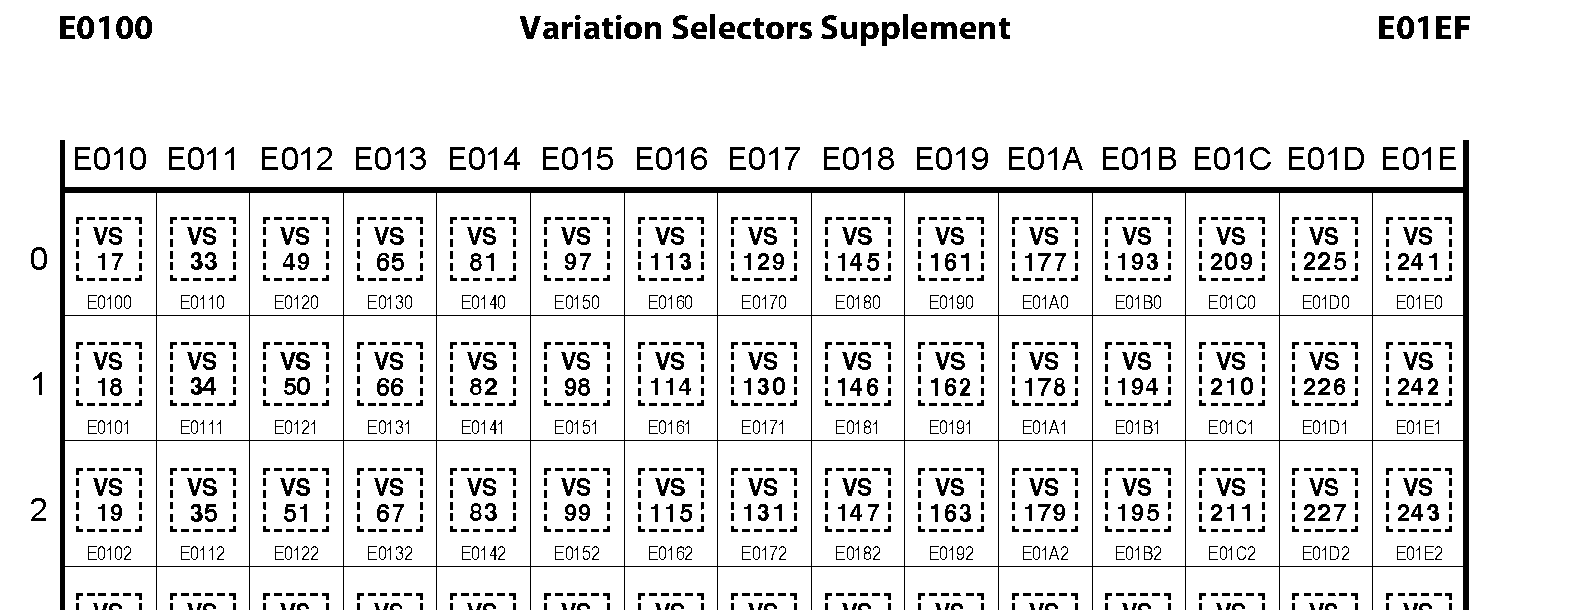 Unicode - Variation Selectors Supplement